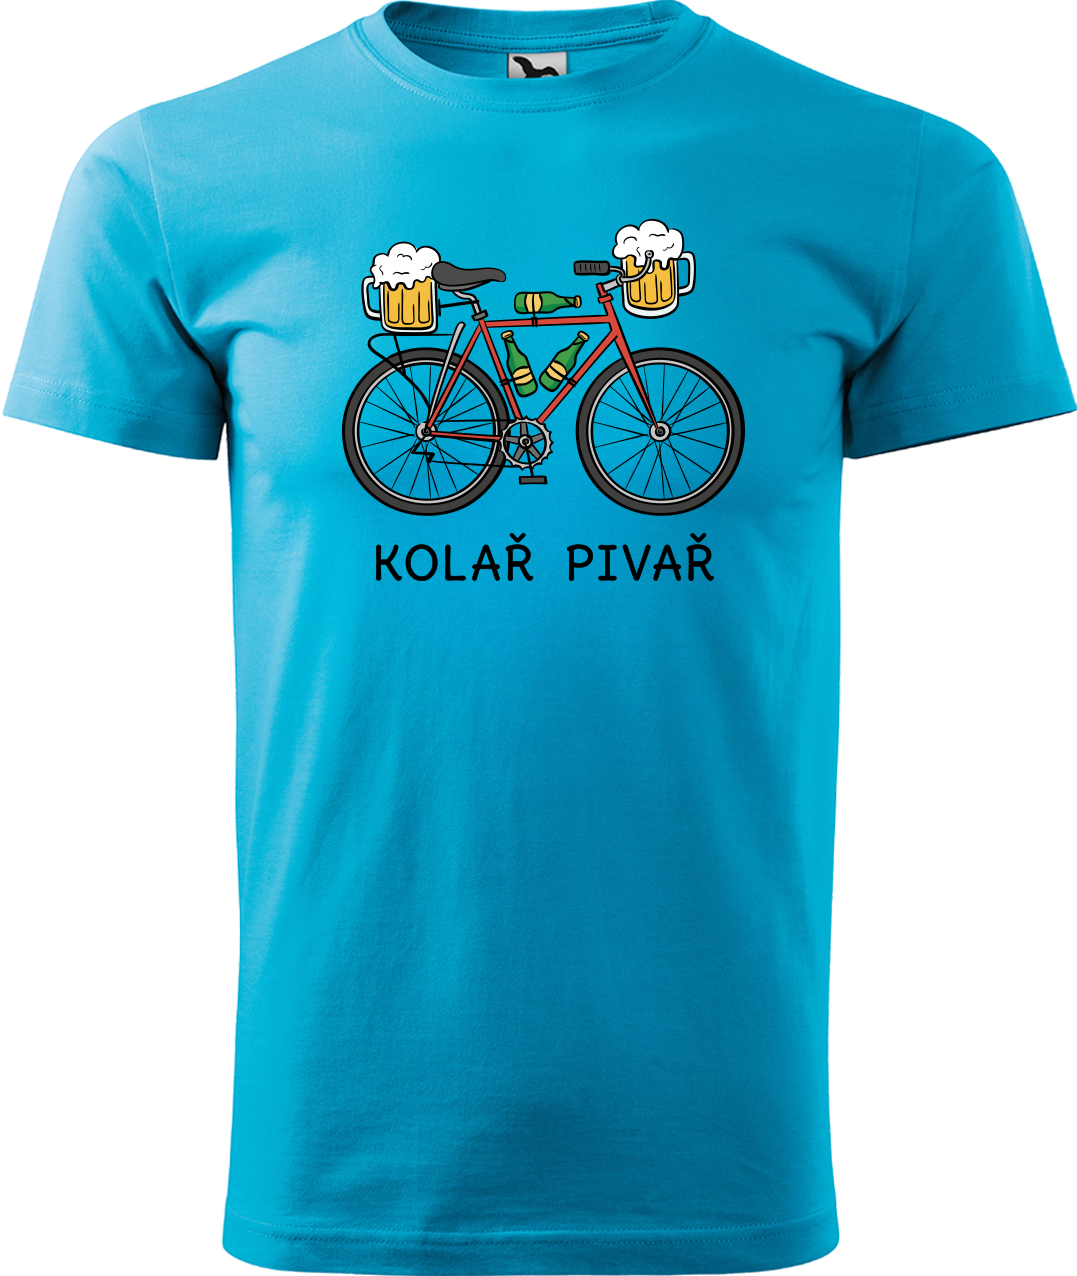 Pánské tričko s kolem - Kolař pivař Velikost: 3XL, Barva: Tyrkysová (44)